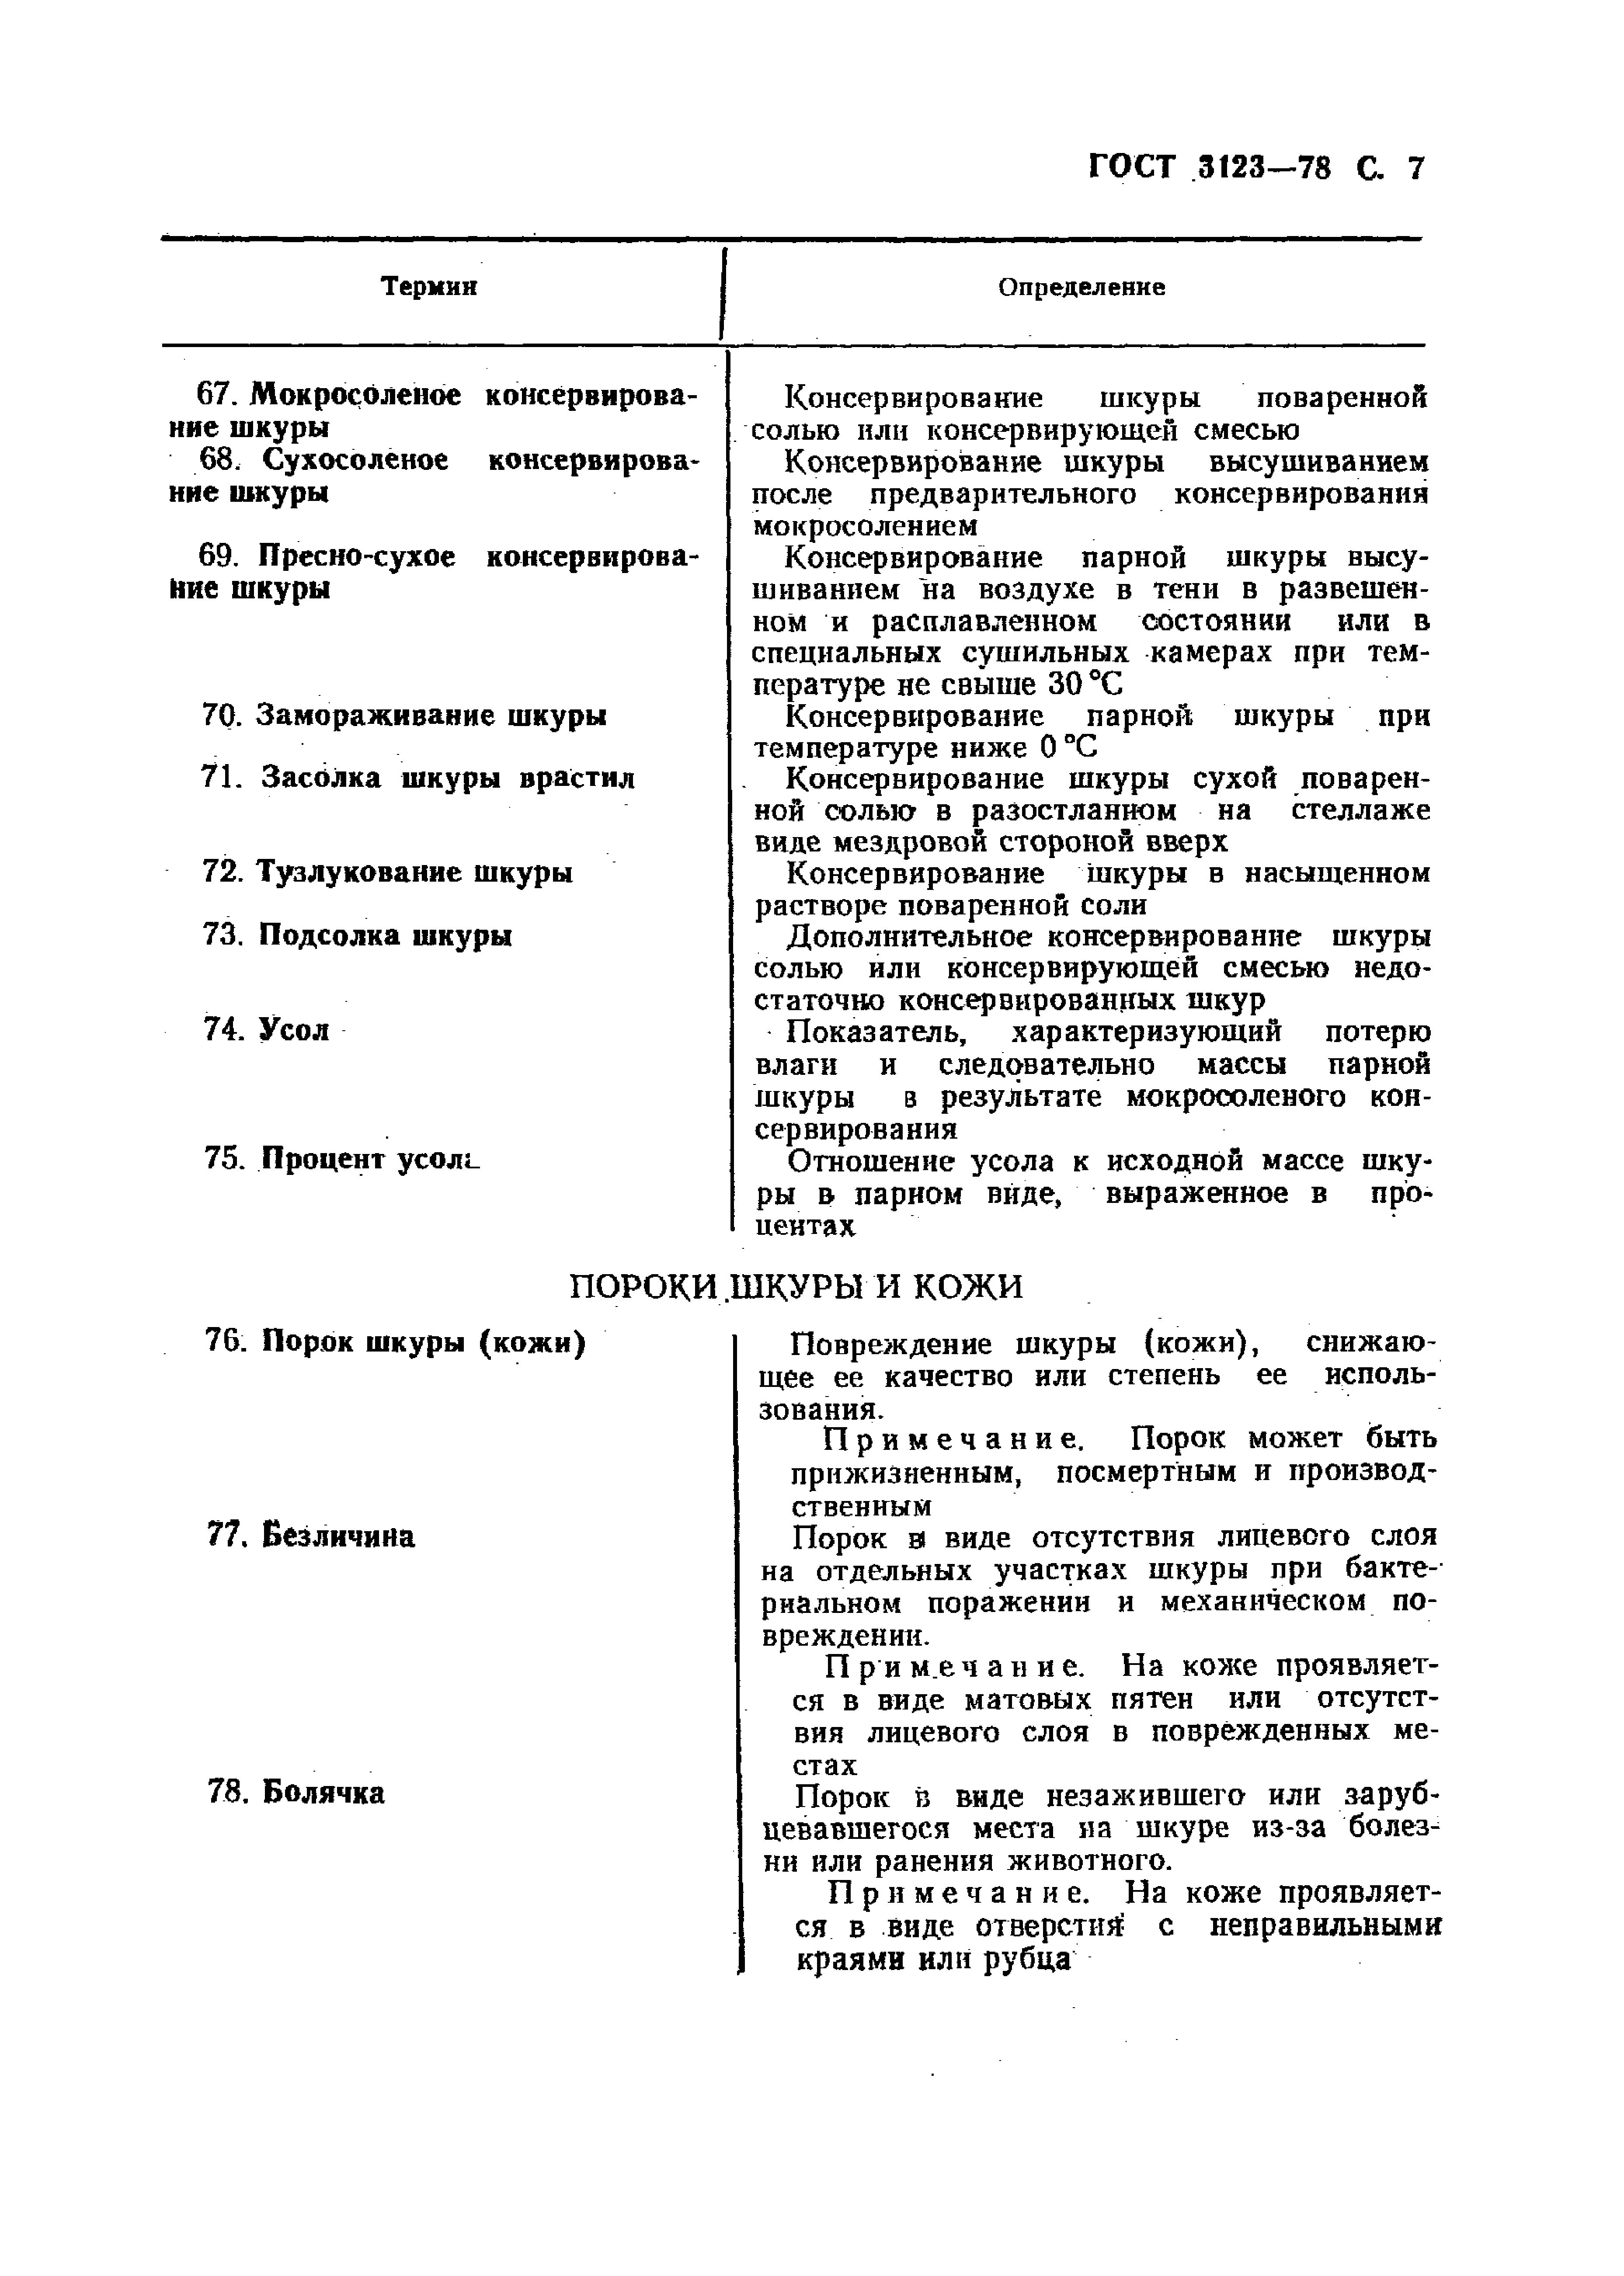 GOST_3123-78_Proizvodstvo_kozhevennoe_Terminy_i_opredelenia (1)_page-0009.jpg